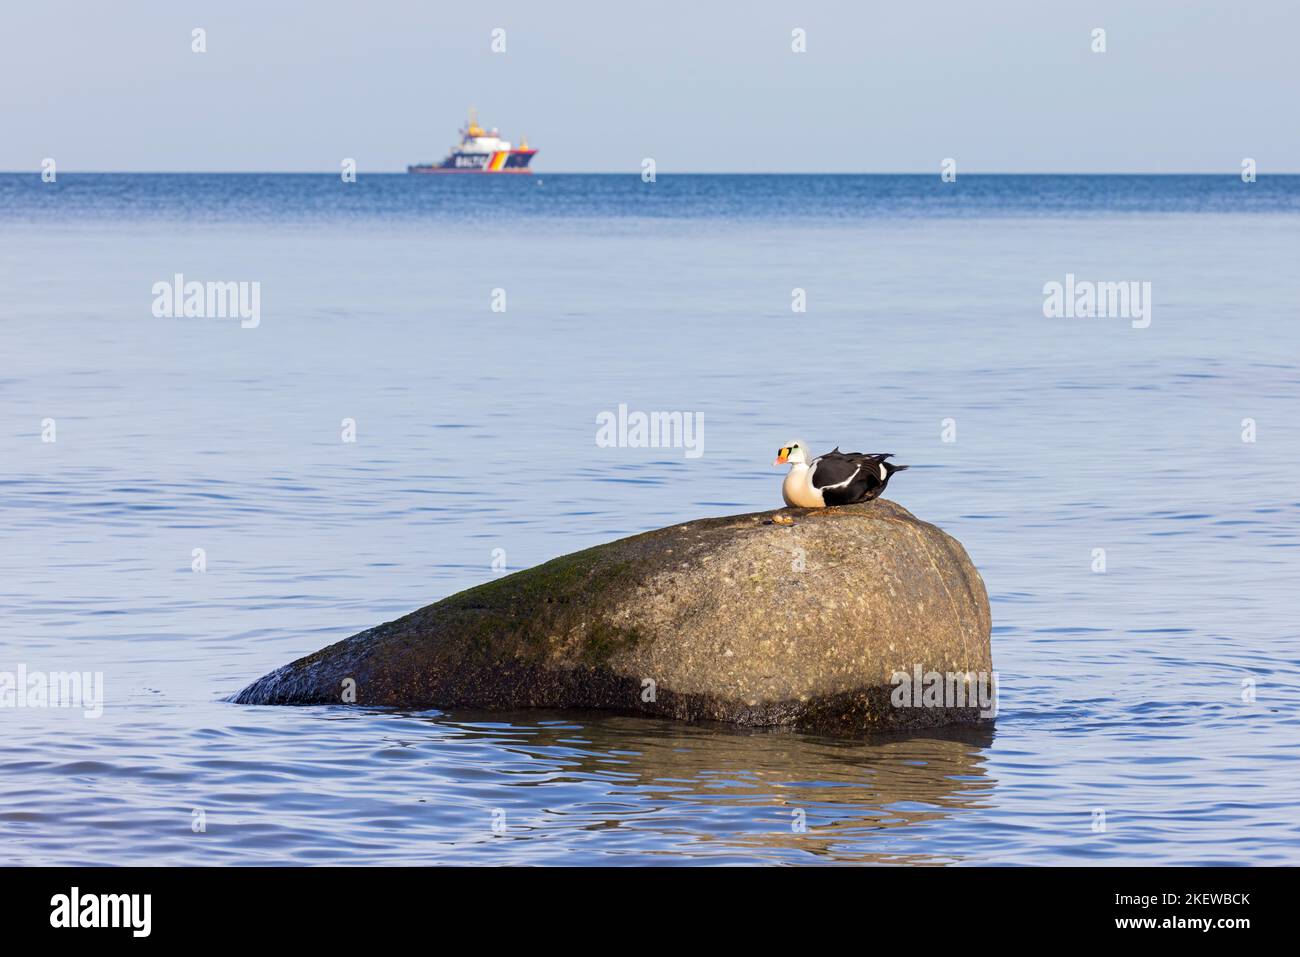 King eider (Somateria spectabilis) macho de pato marino en plumaje de reproducción descansando en roca en el mar Báltico en invierno, Mecklemburgo-Pomerania Occidental, Alemania Foto de stock